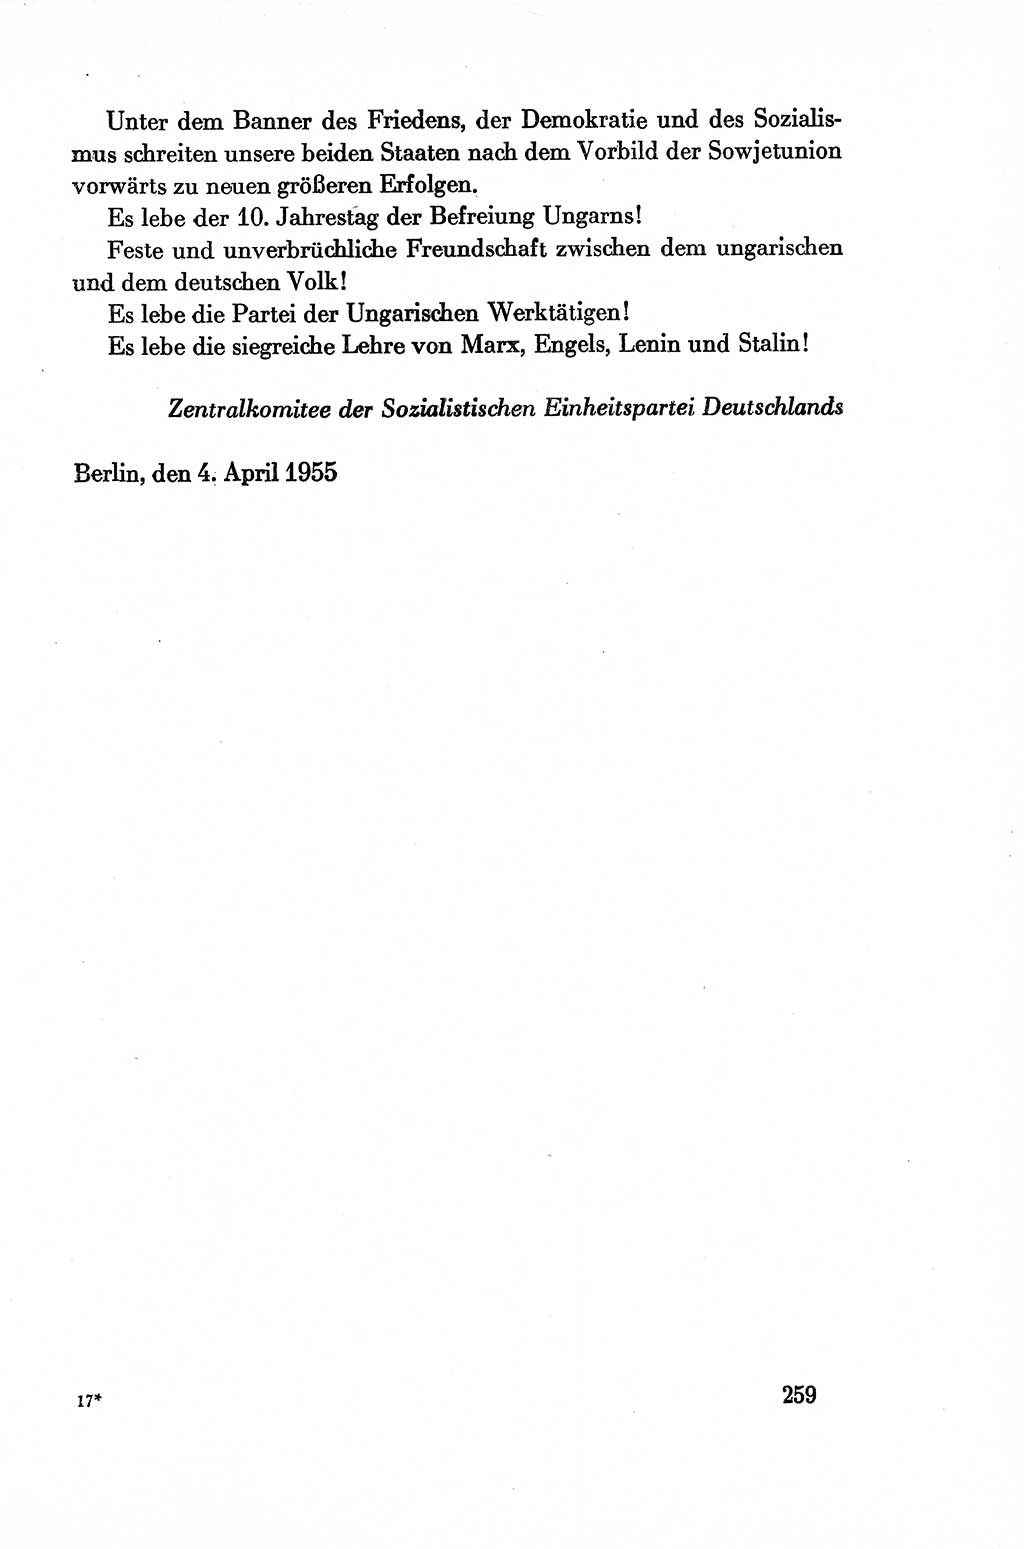 Dokumente der Sozialistischen Einheitspartei Deutschlands (SED) [Deutsche Demokratische Republik (DDR)] 1954-1955, Seite 259 (Dok. SED DDR 1954-1955, S. 259)